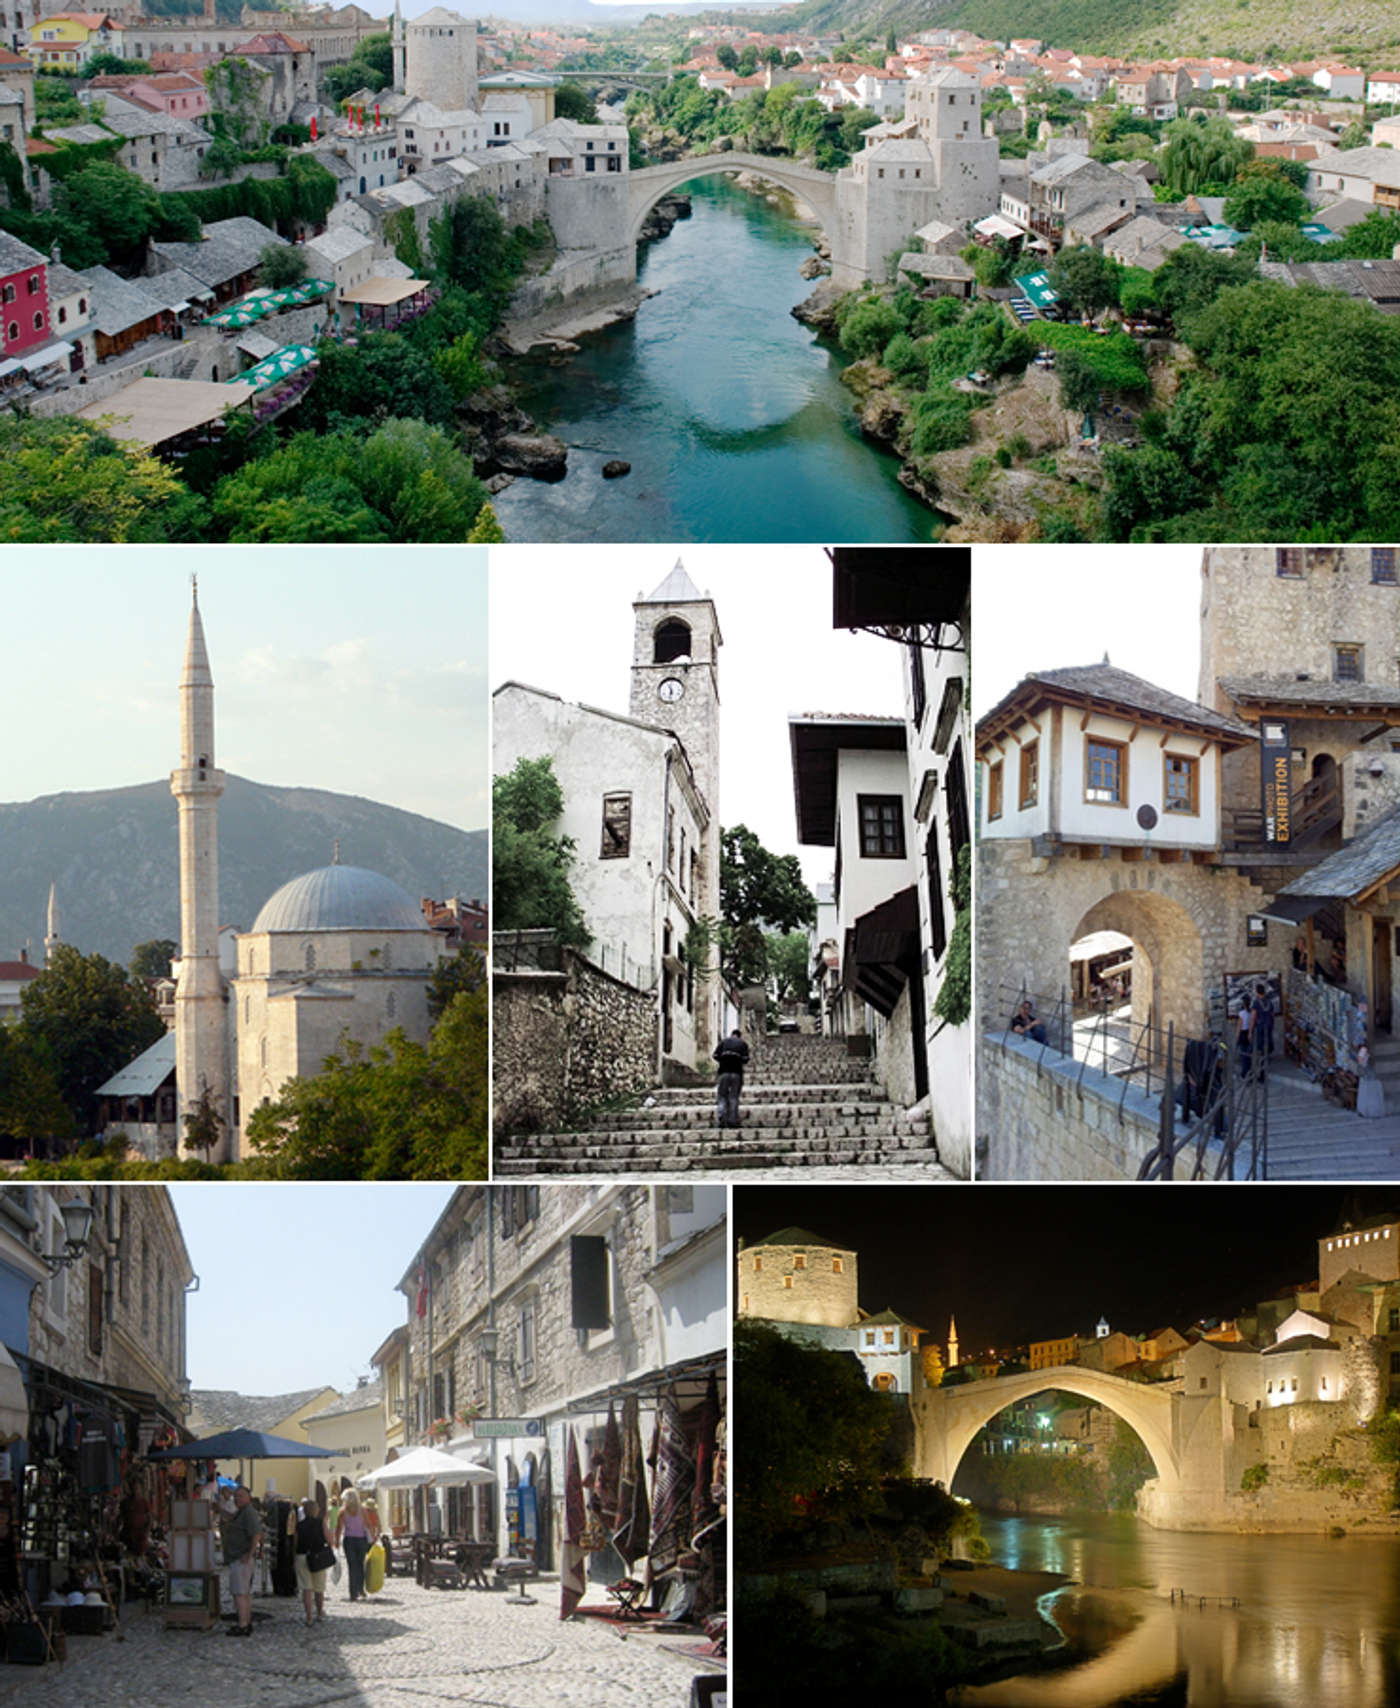 Ontdek jouw stukje Mostar.